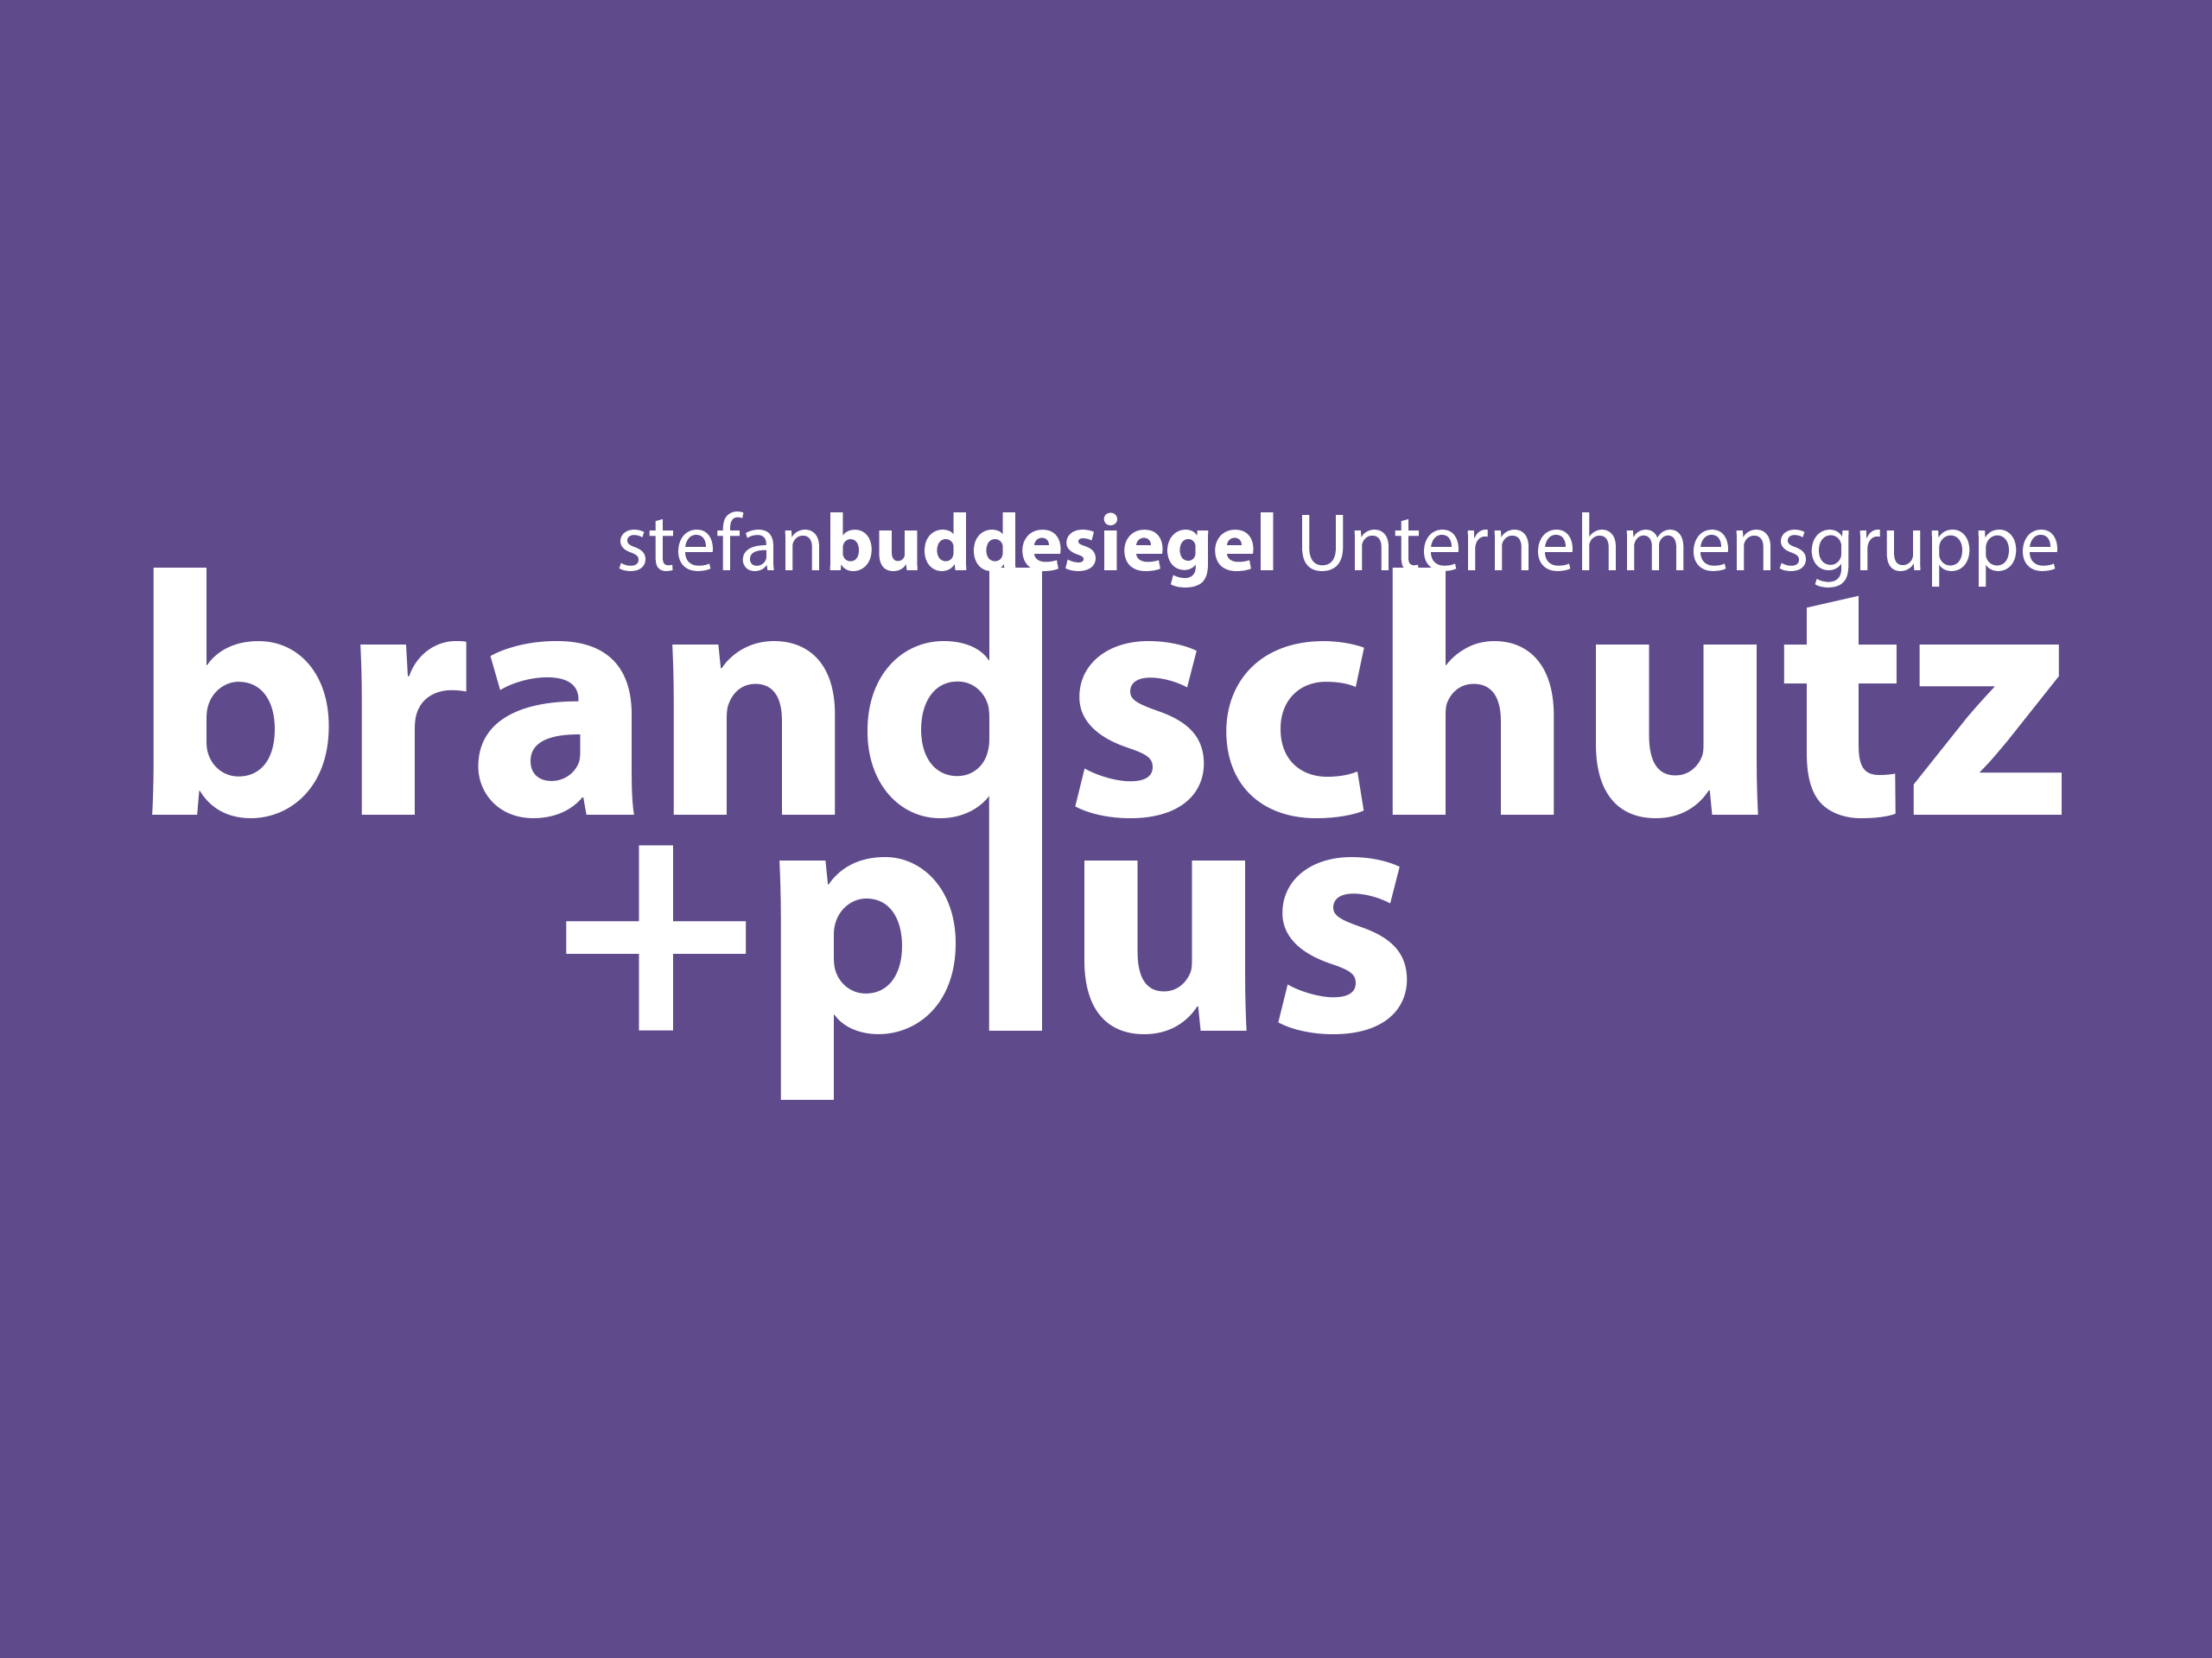 brandschutz+plus